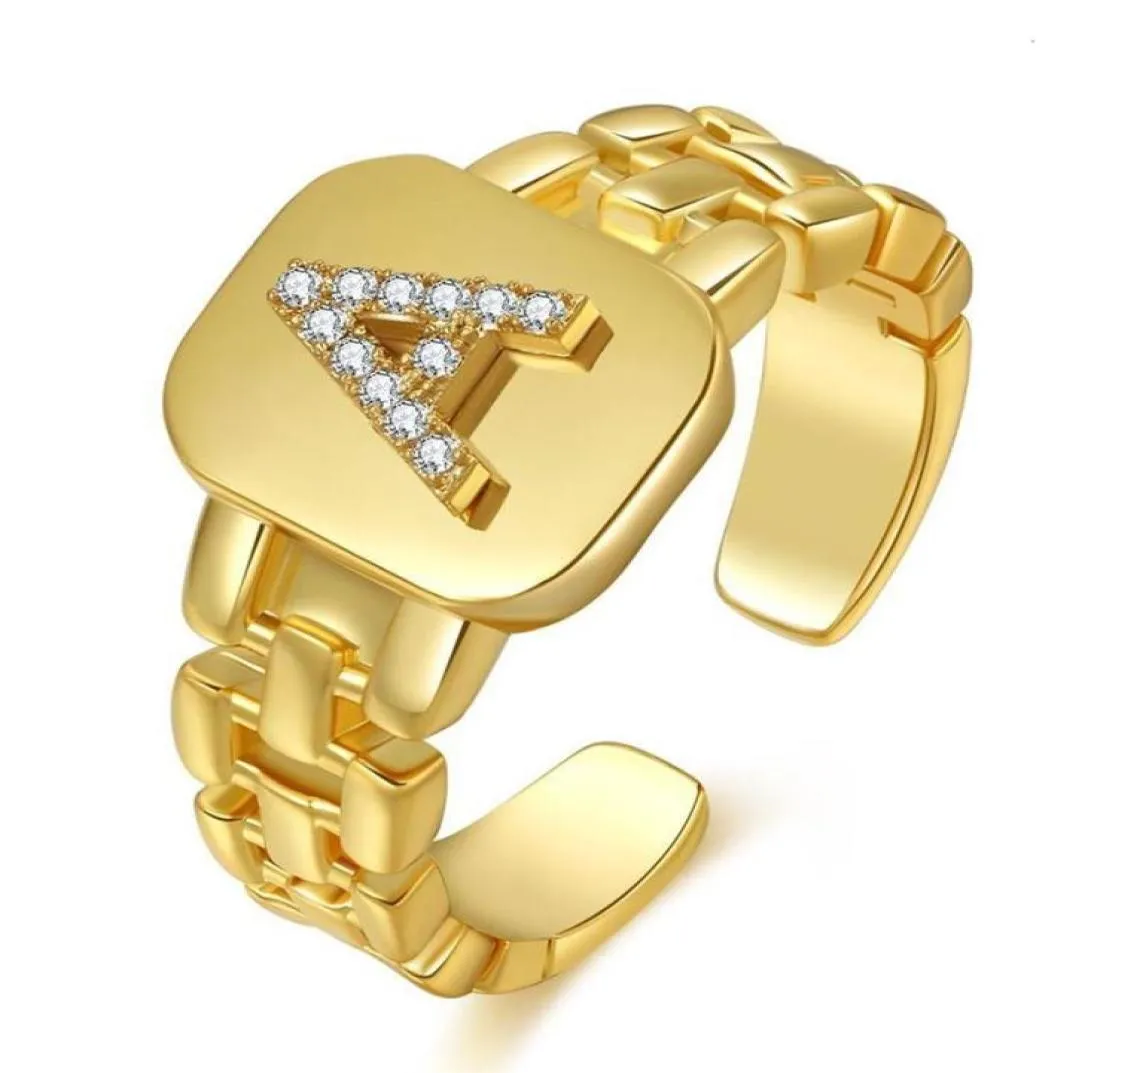 Pierścienie klastra masywny szeroko pusty litera az złoto kolorowy pierścień otwierający inicjały imienia alfabet żeńska impreza mody biżuteria 3818320